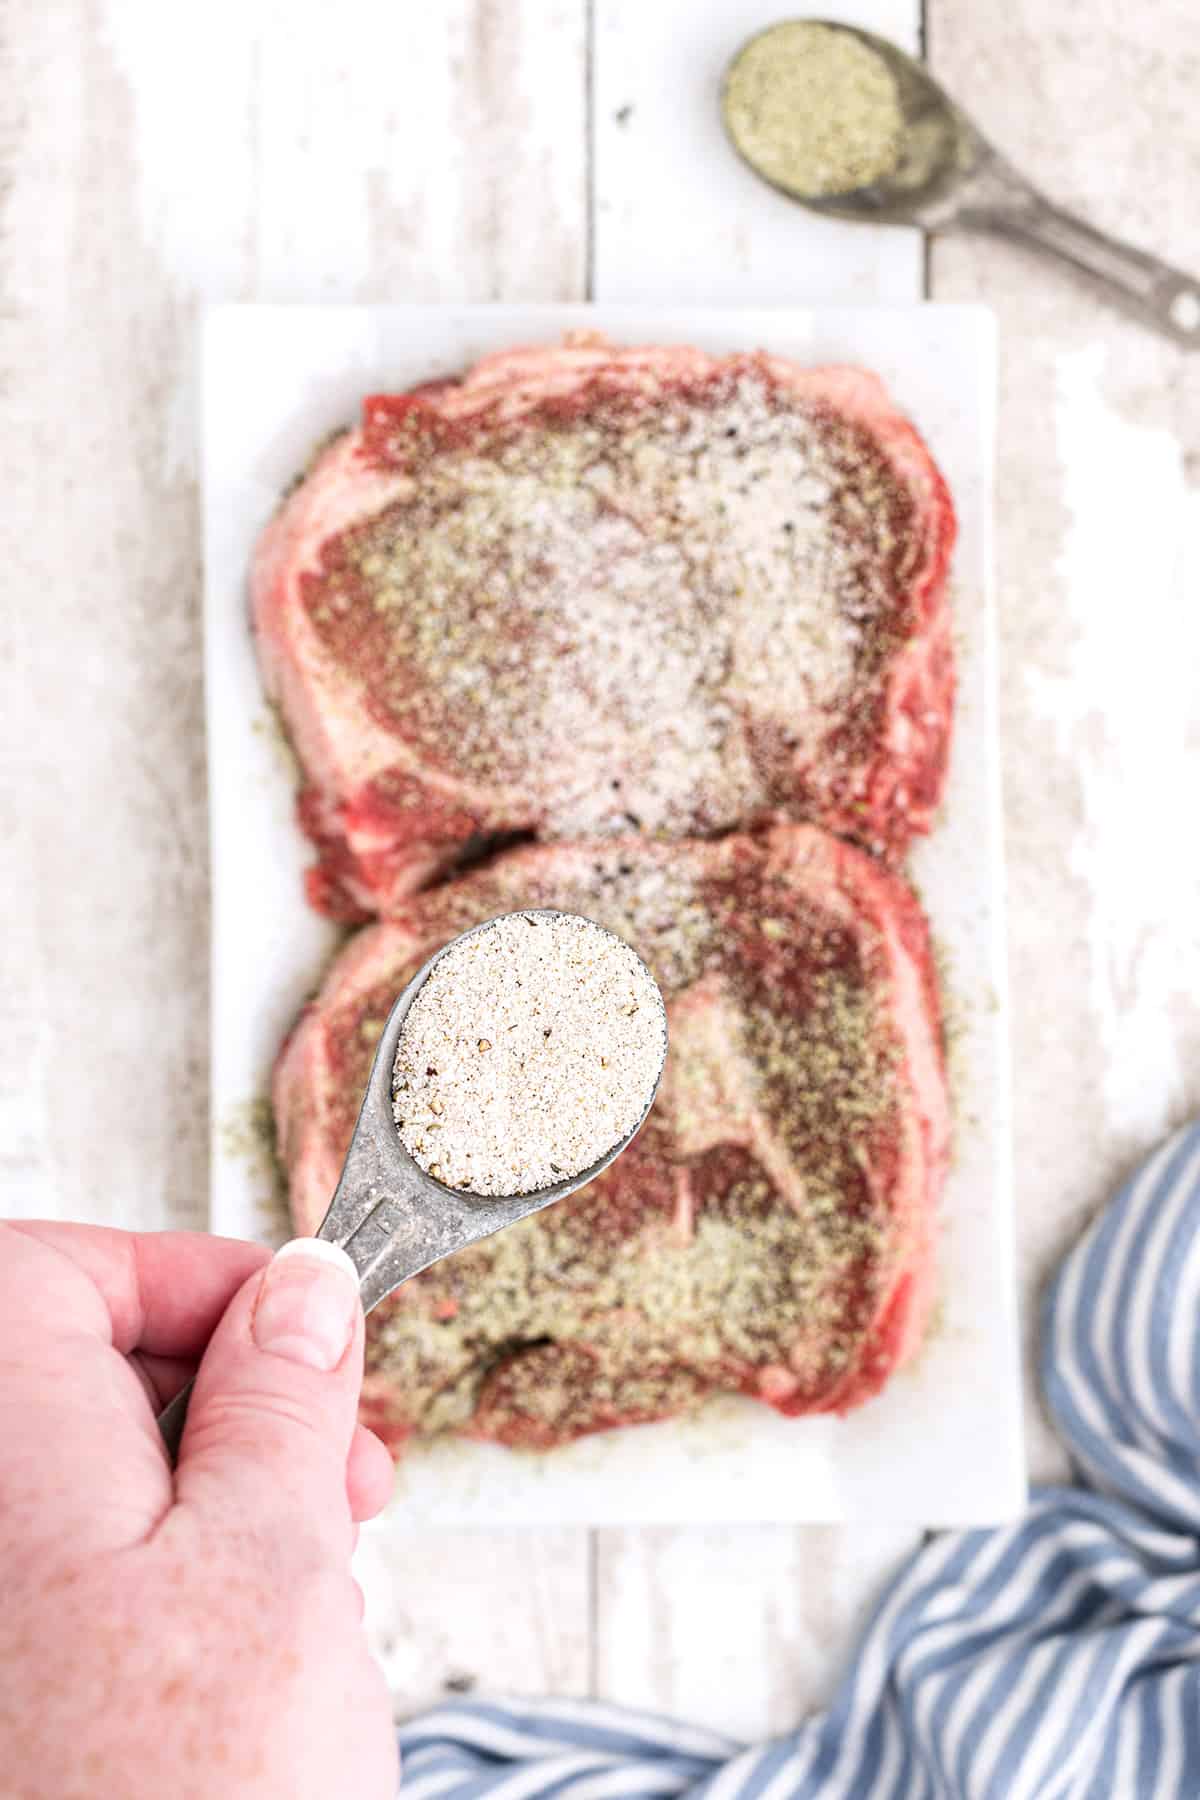 Sprinkling seasonings on two ribeye steaks.